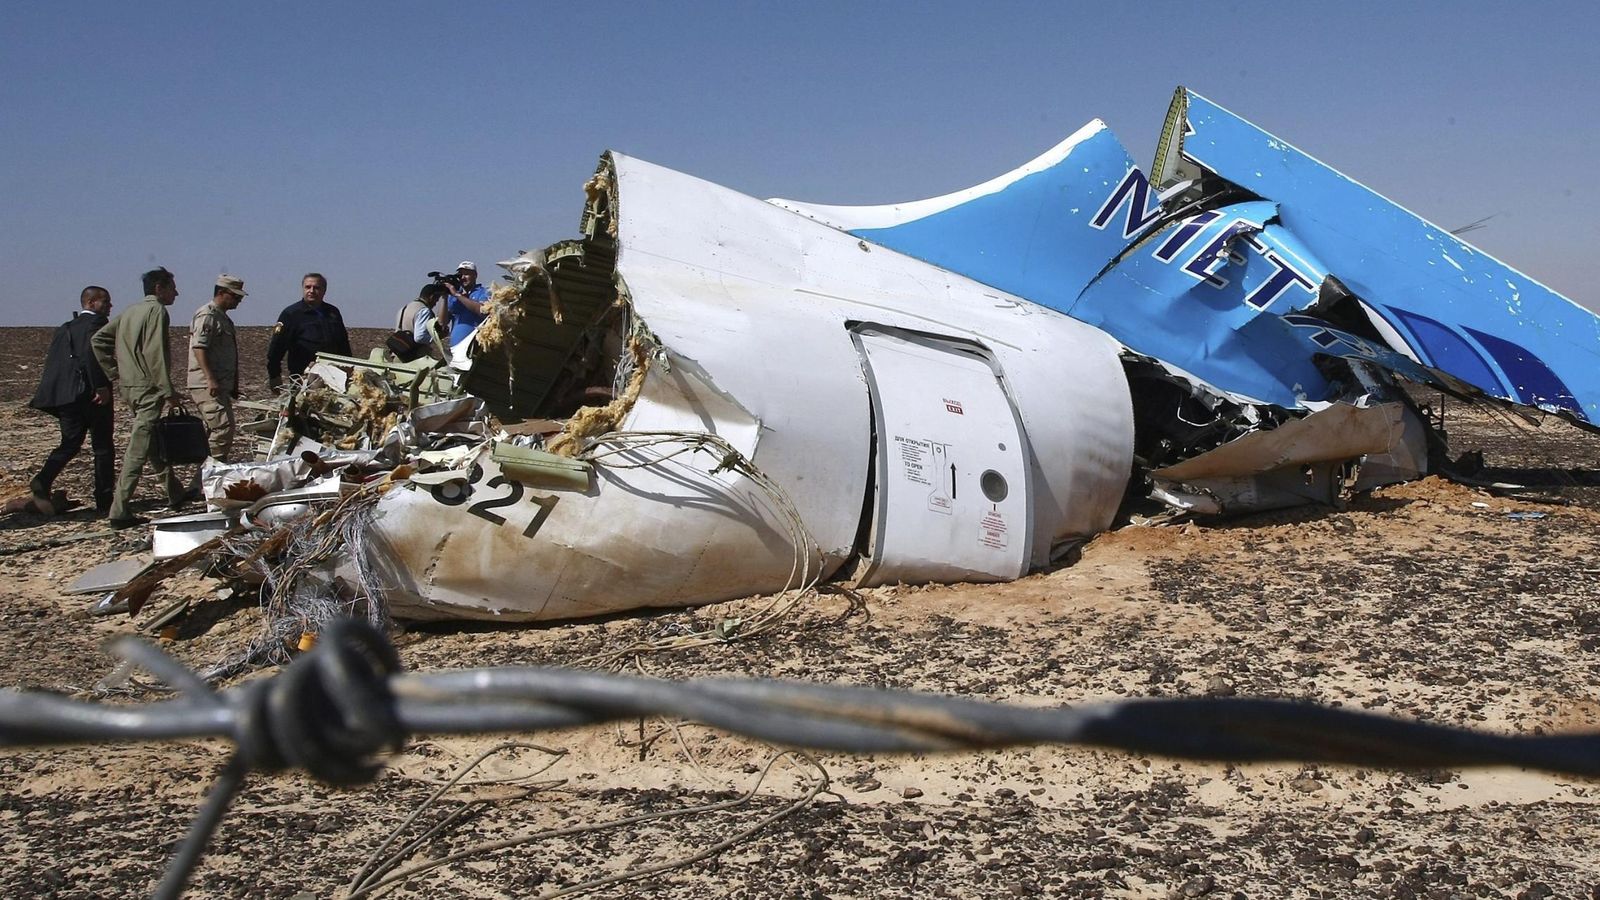 Foto: Fuselaje del avión siniestrado en el Sinaí (EFE)